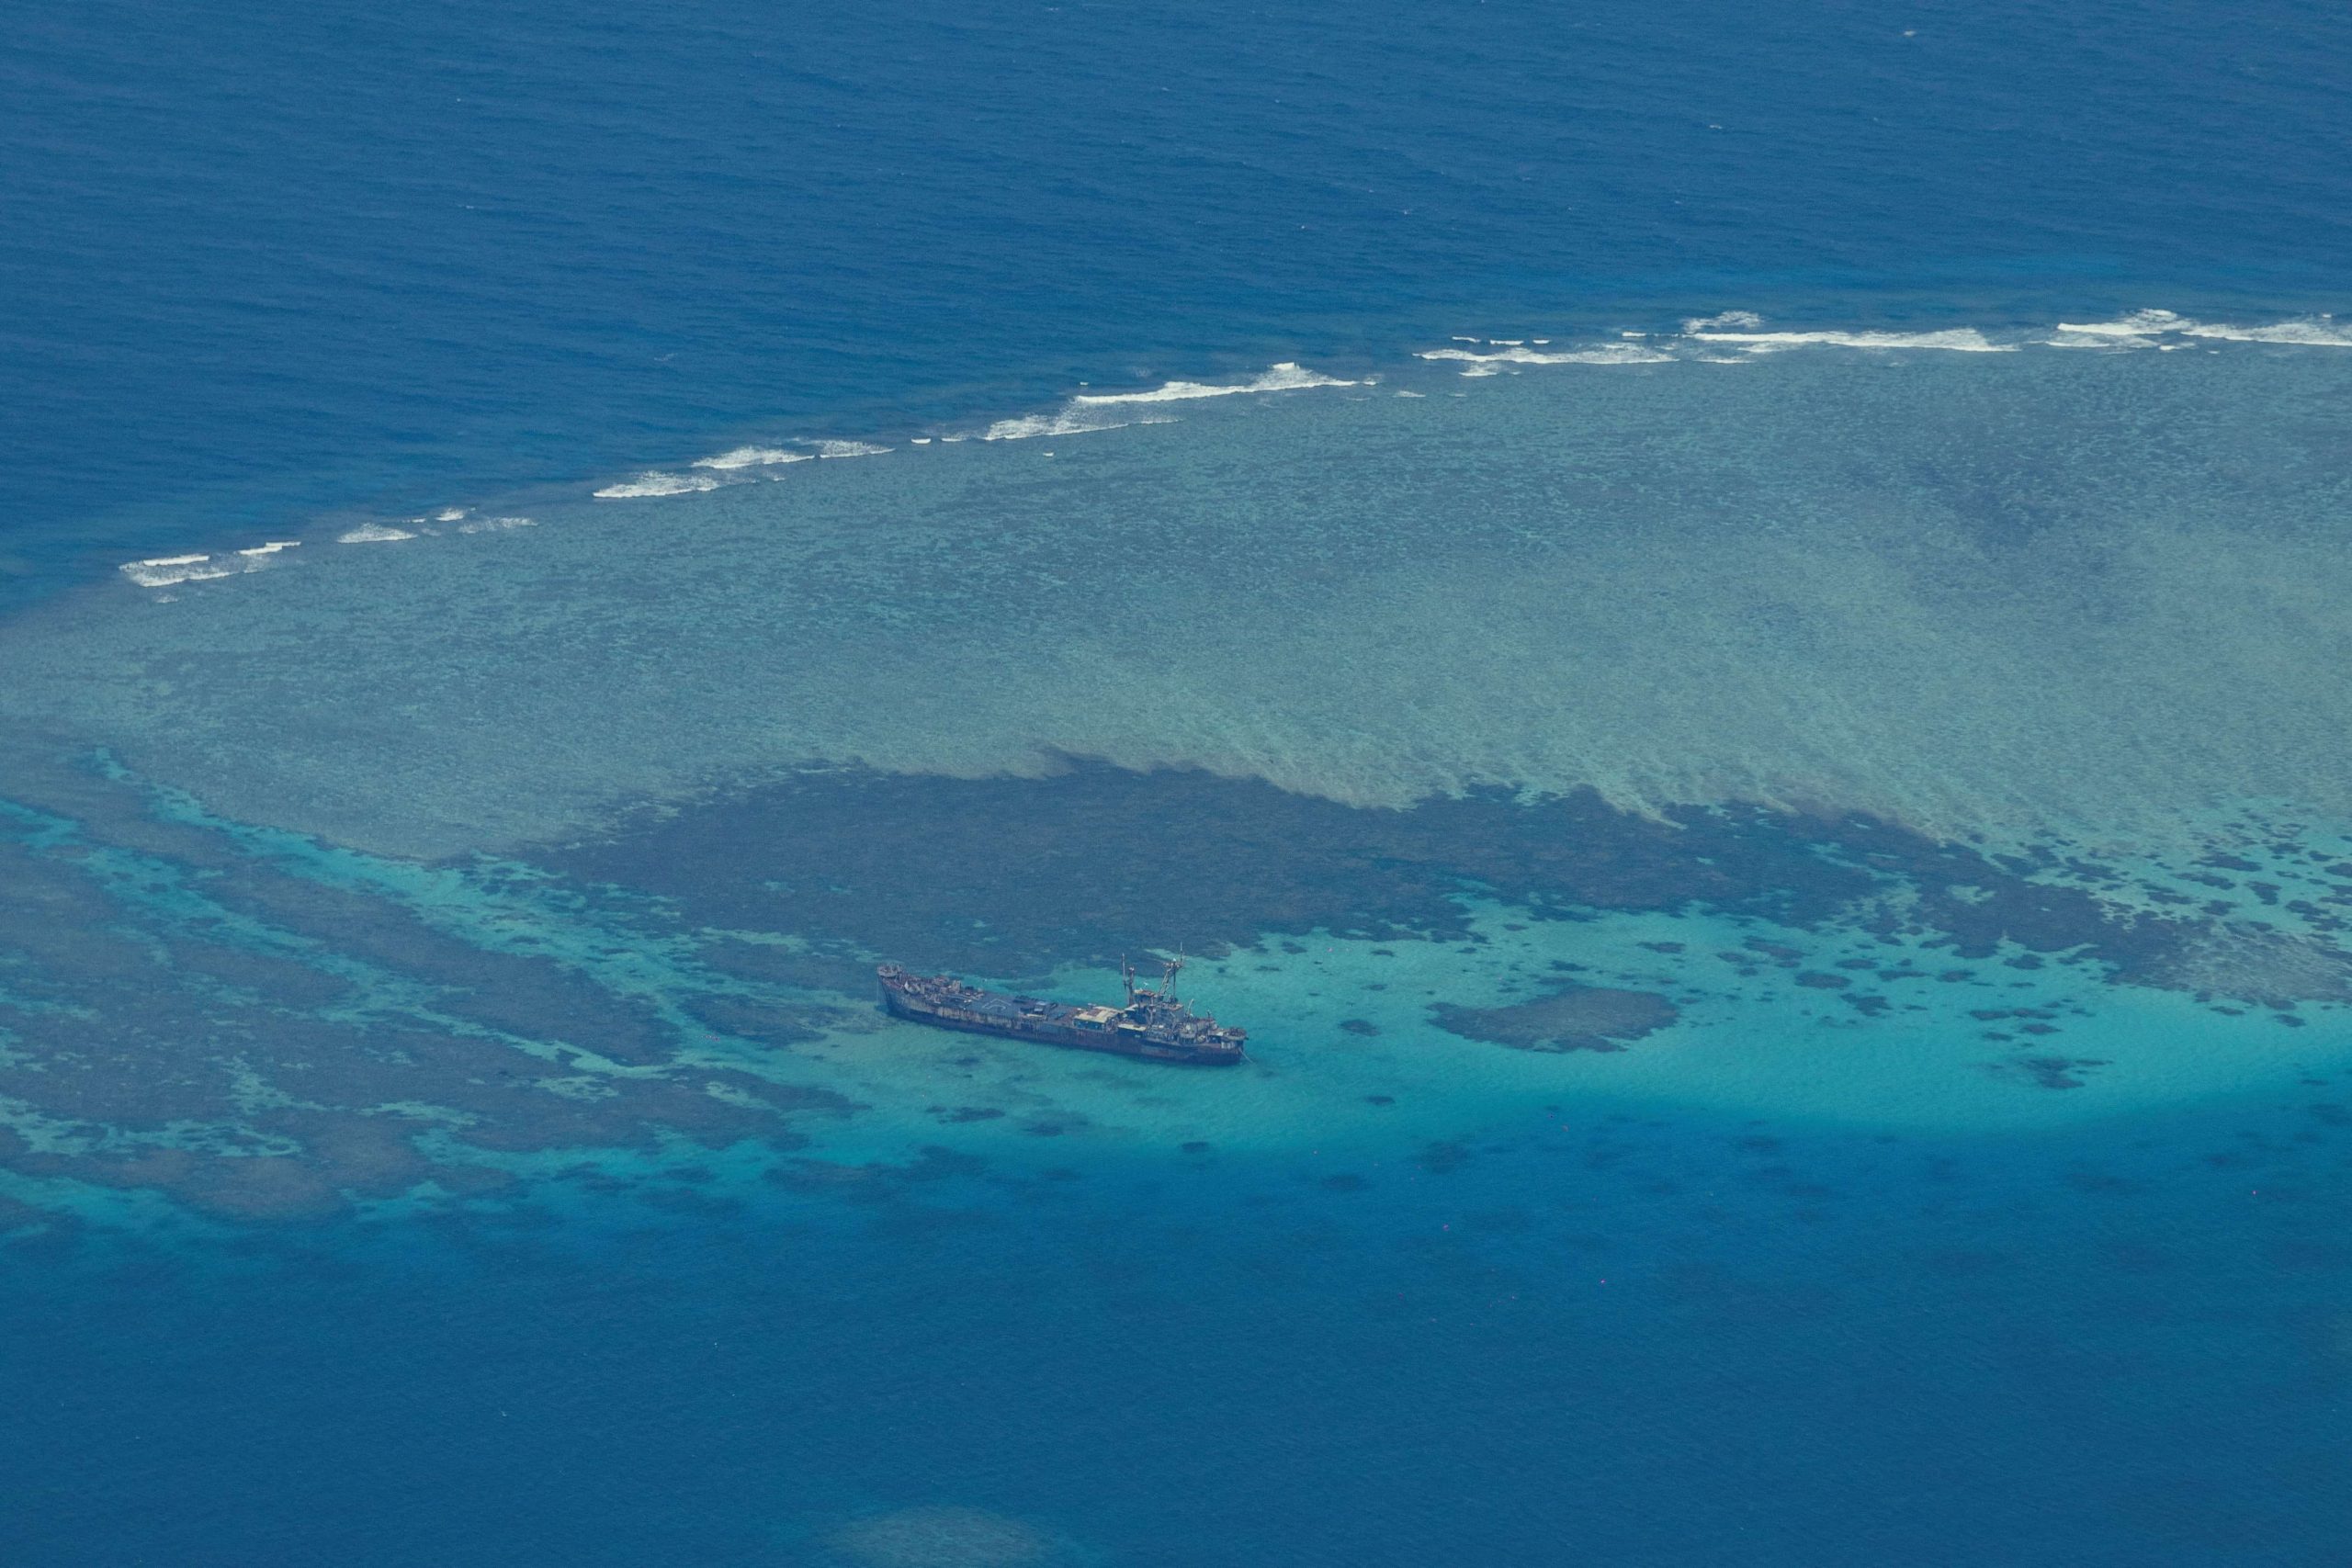 否认坐滩军舰破坏南海珊瑚礁  菲律宾斥中国专家散播假消息